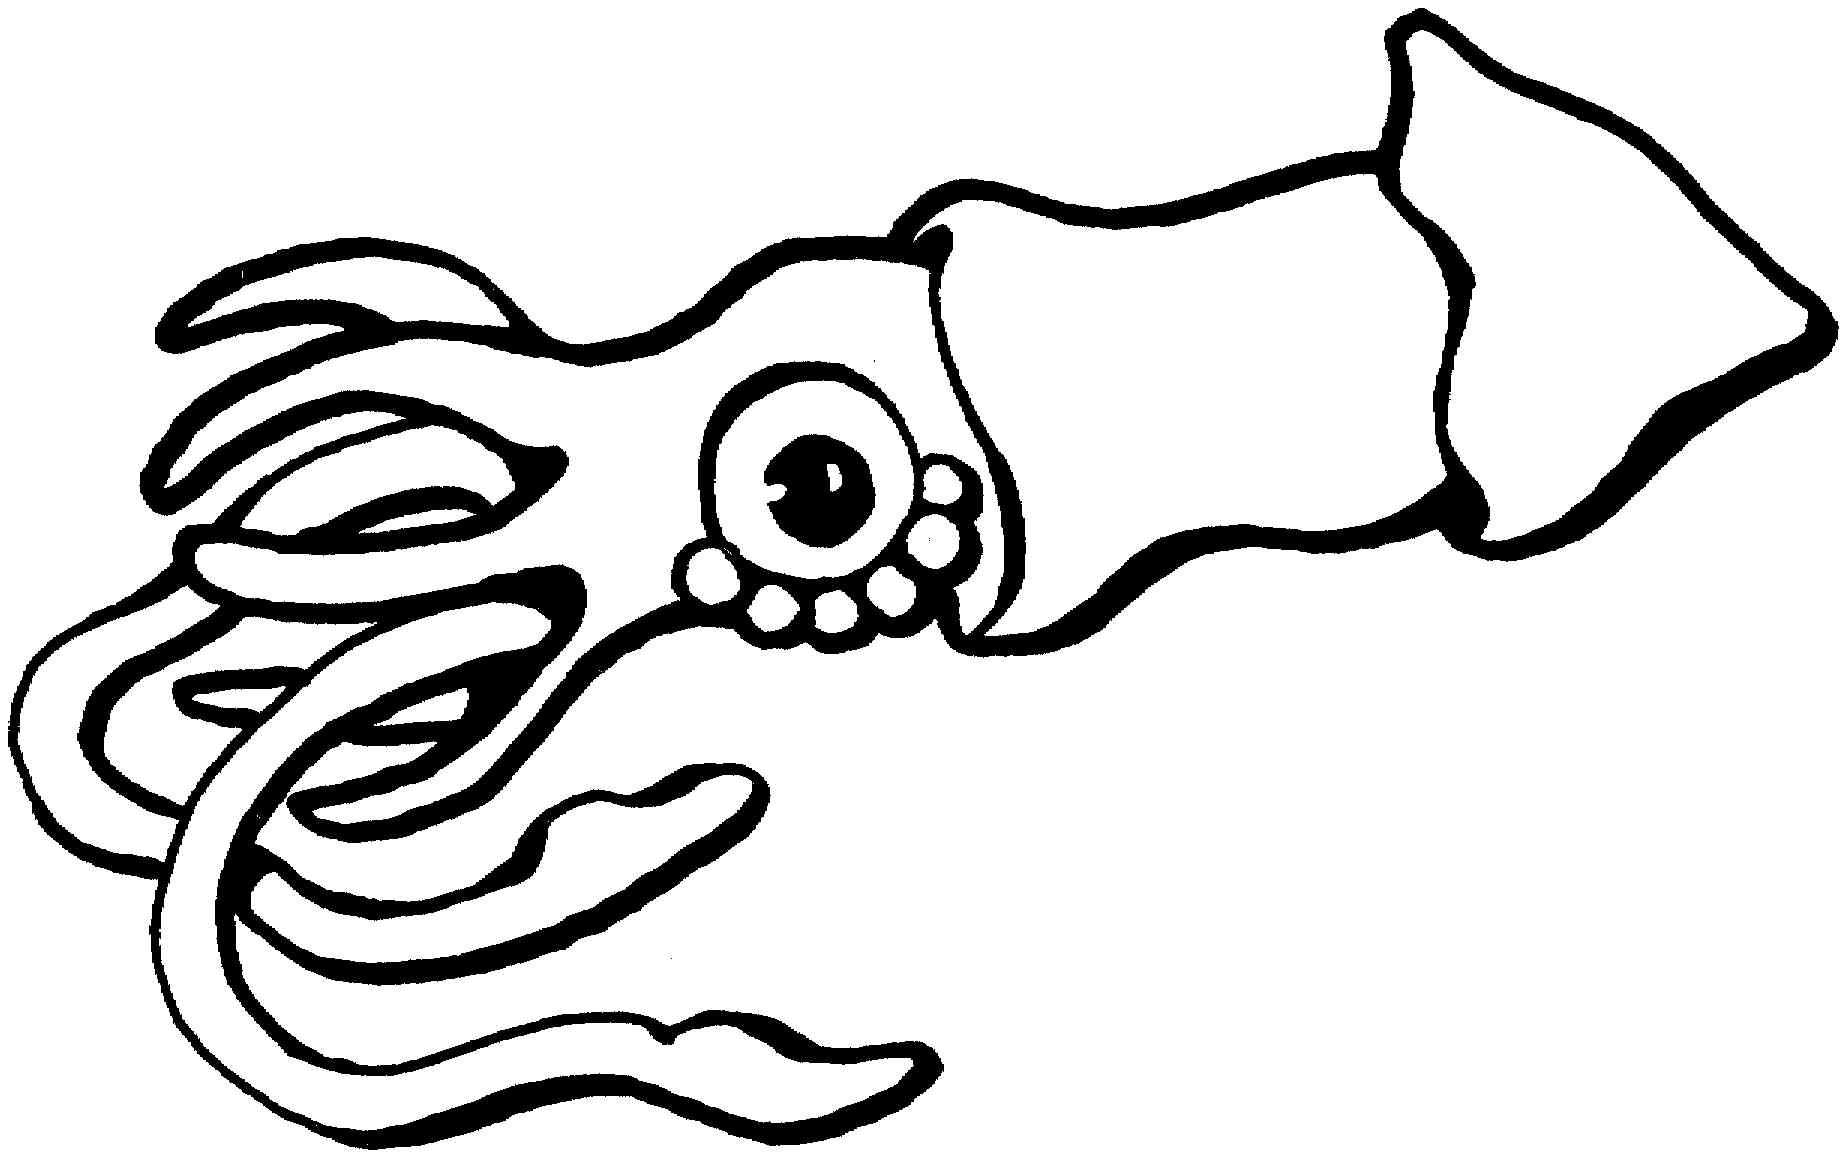 Stingray as squid